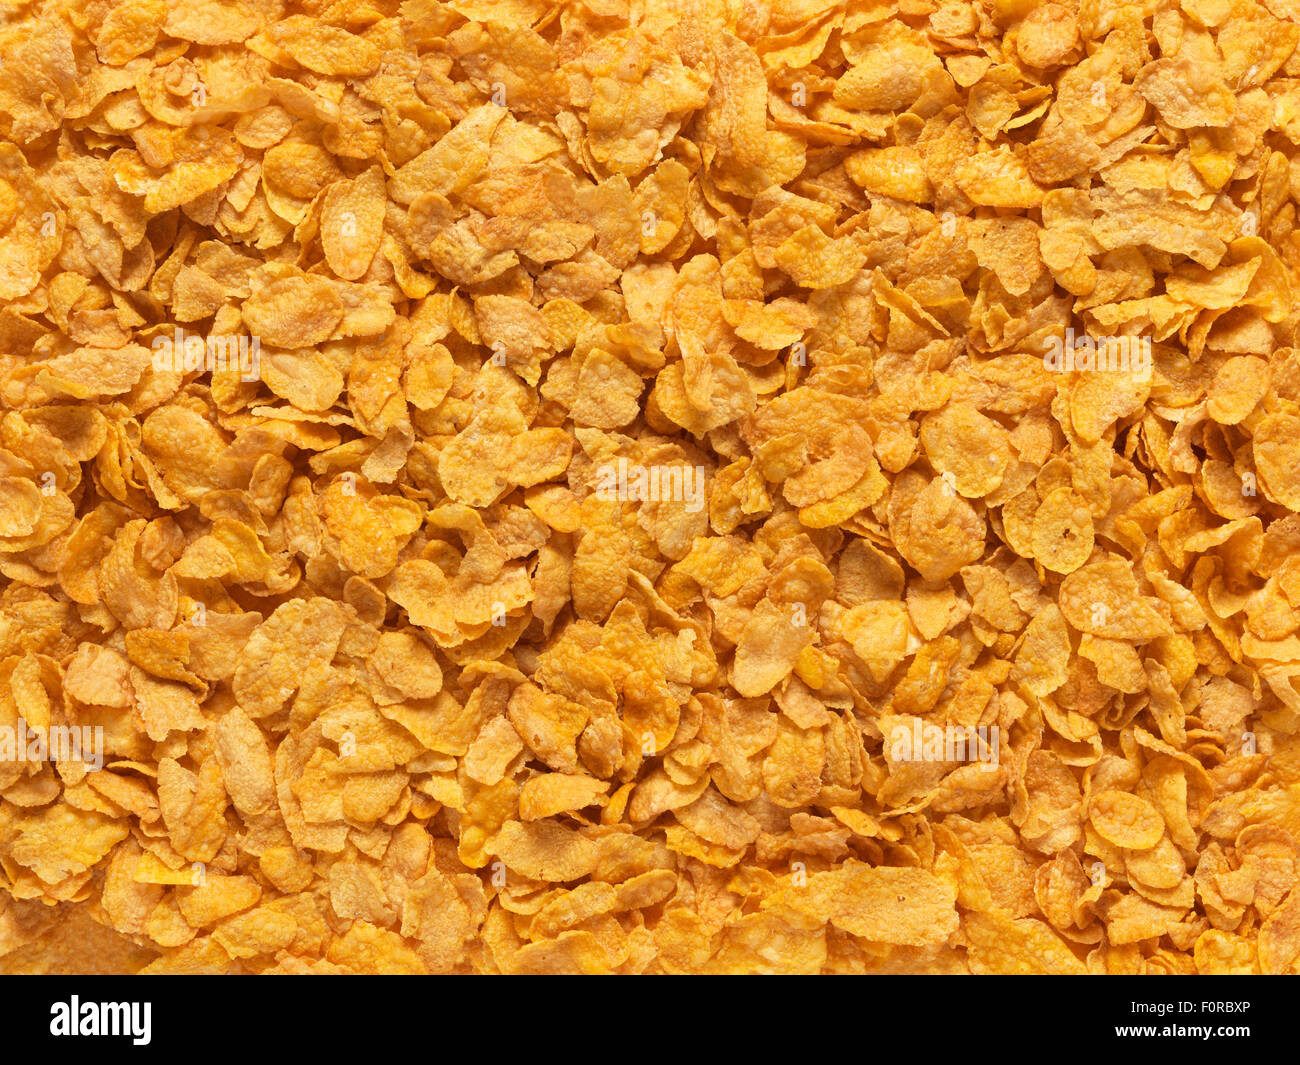 Cerca, full frame, shot de maíz en copos de cereales de desayuno ideal para utilizar un fondo imge Foto de stock